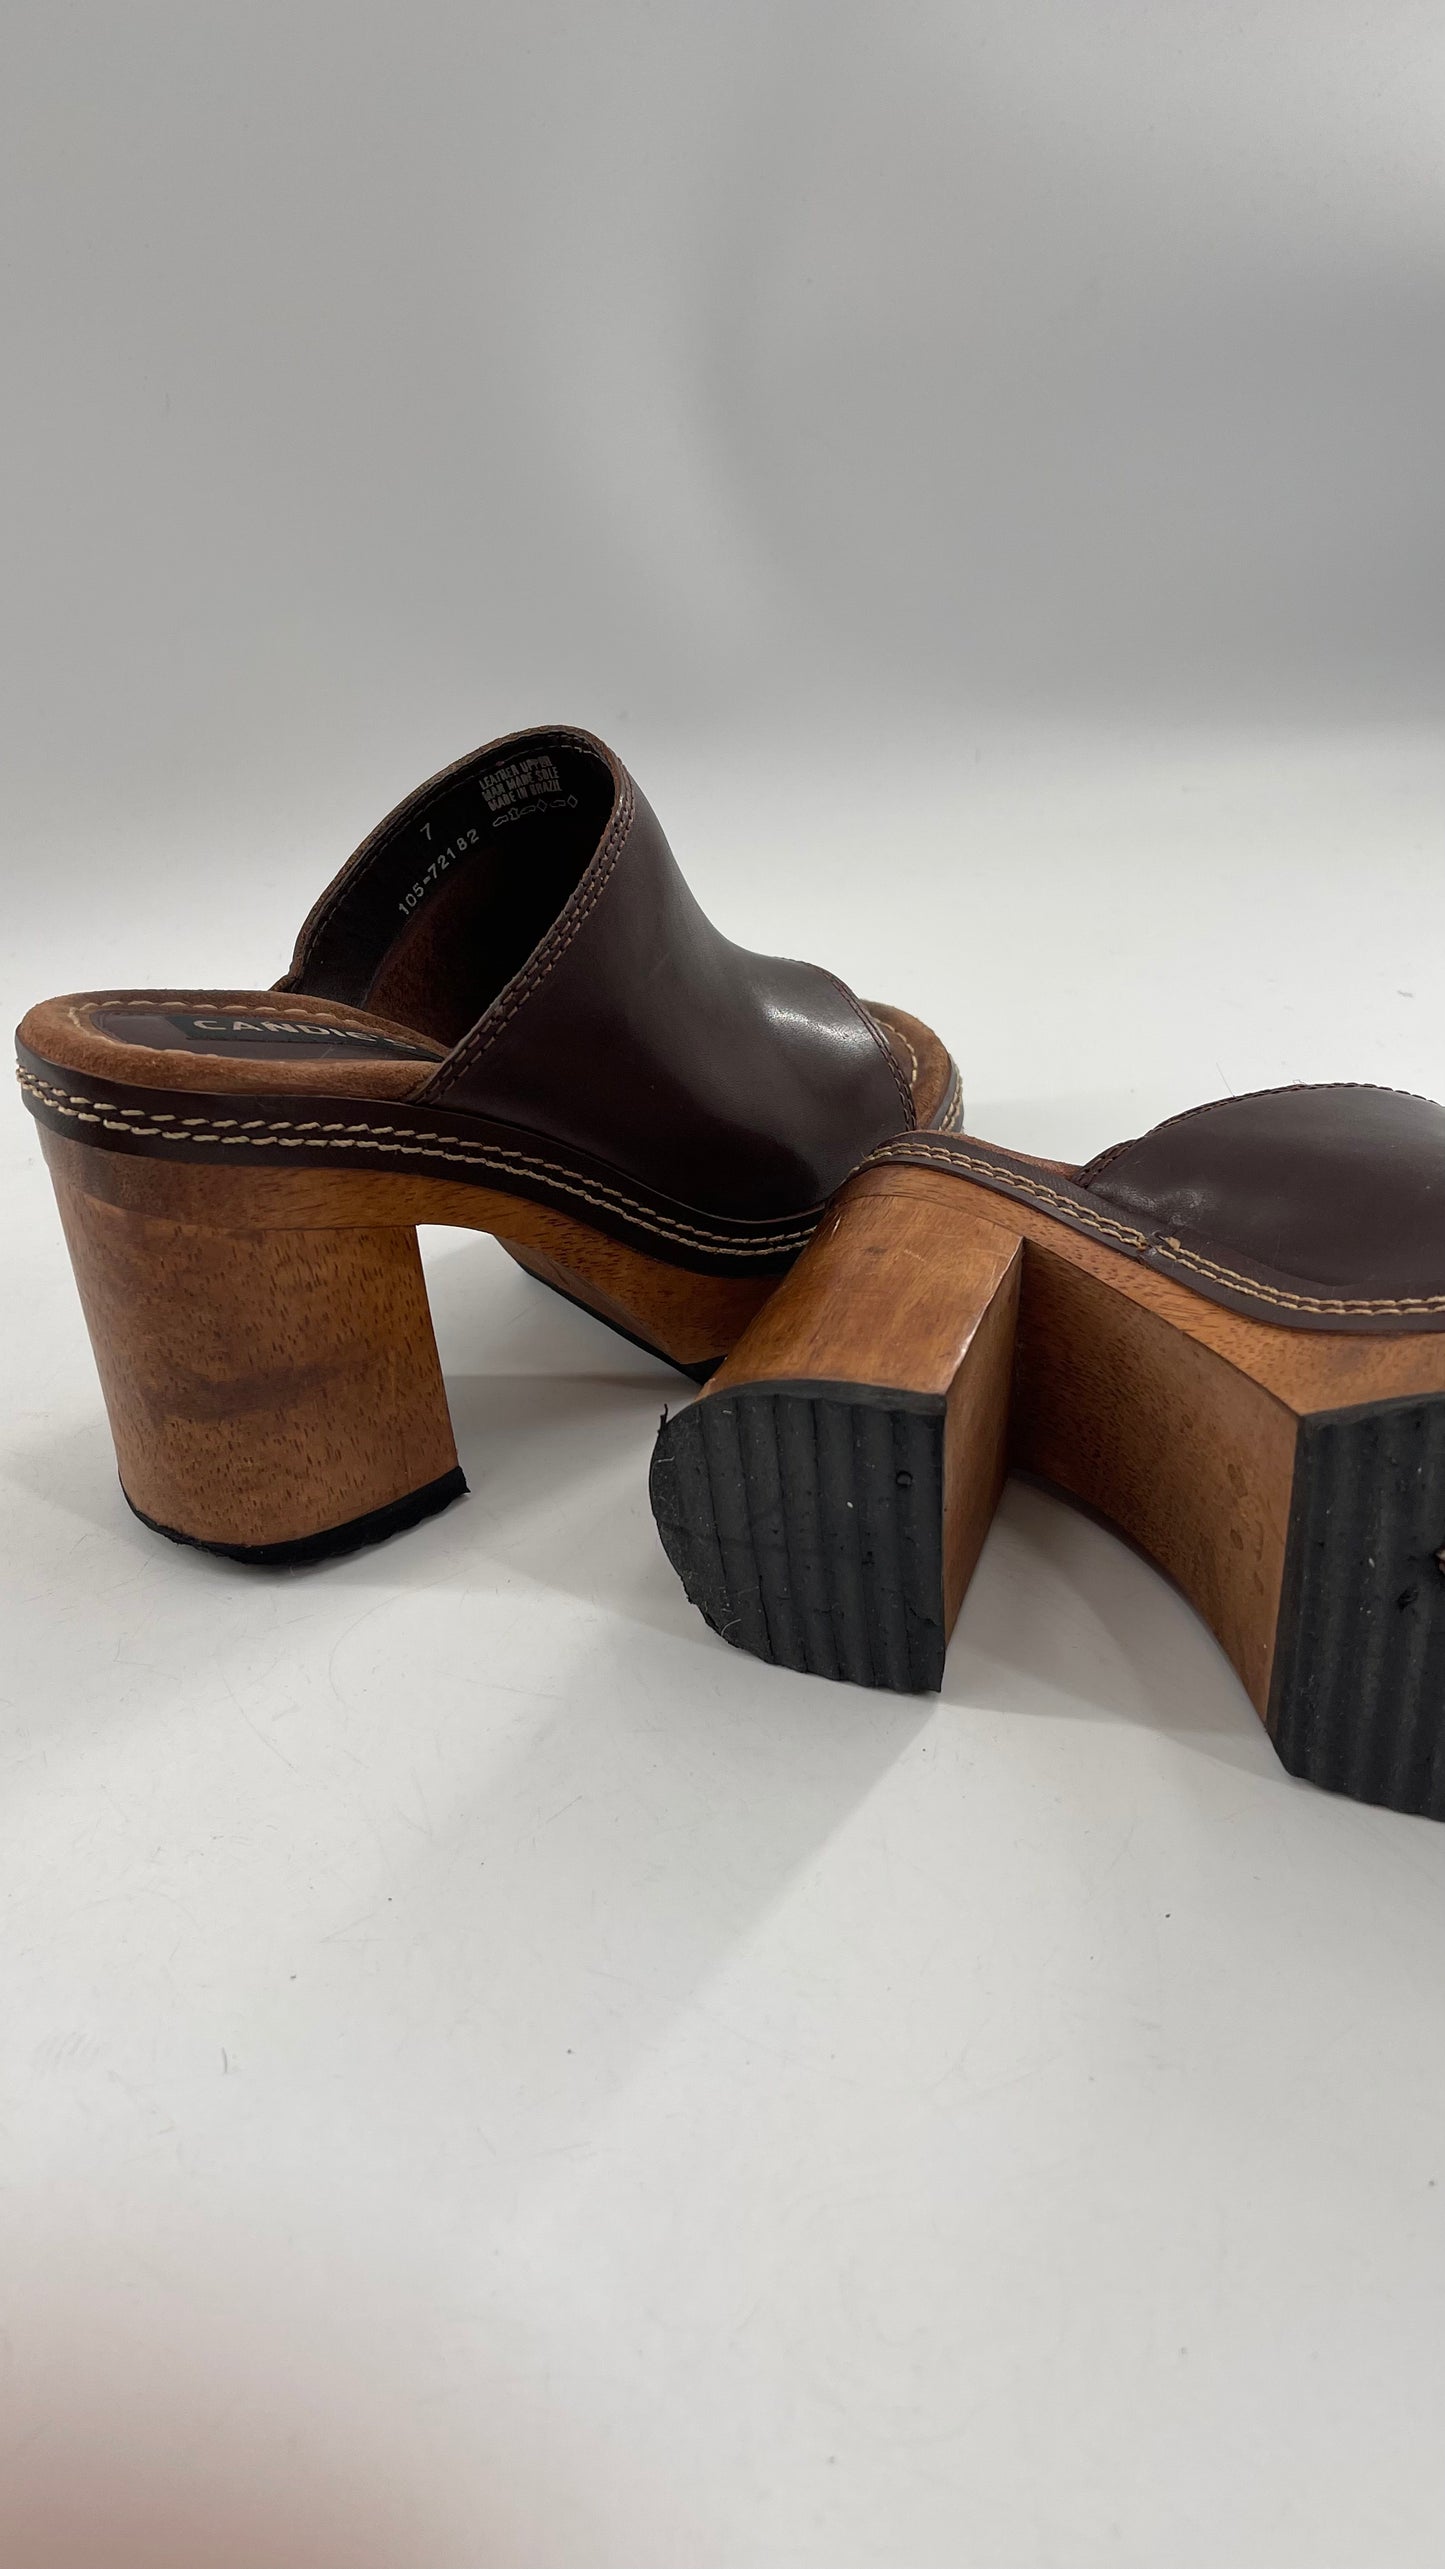 Vintage 1990s Candie’s Leather Mule Chunky Wood Platform Heels (7)